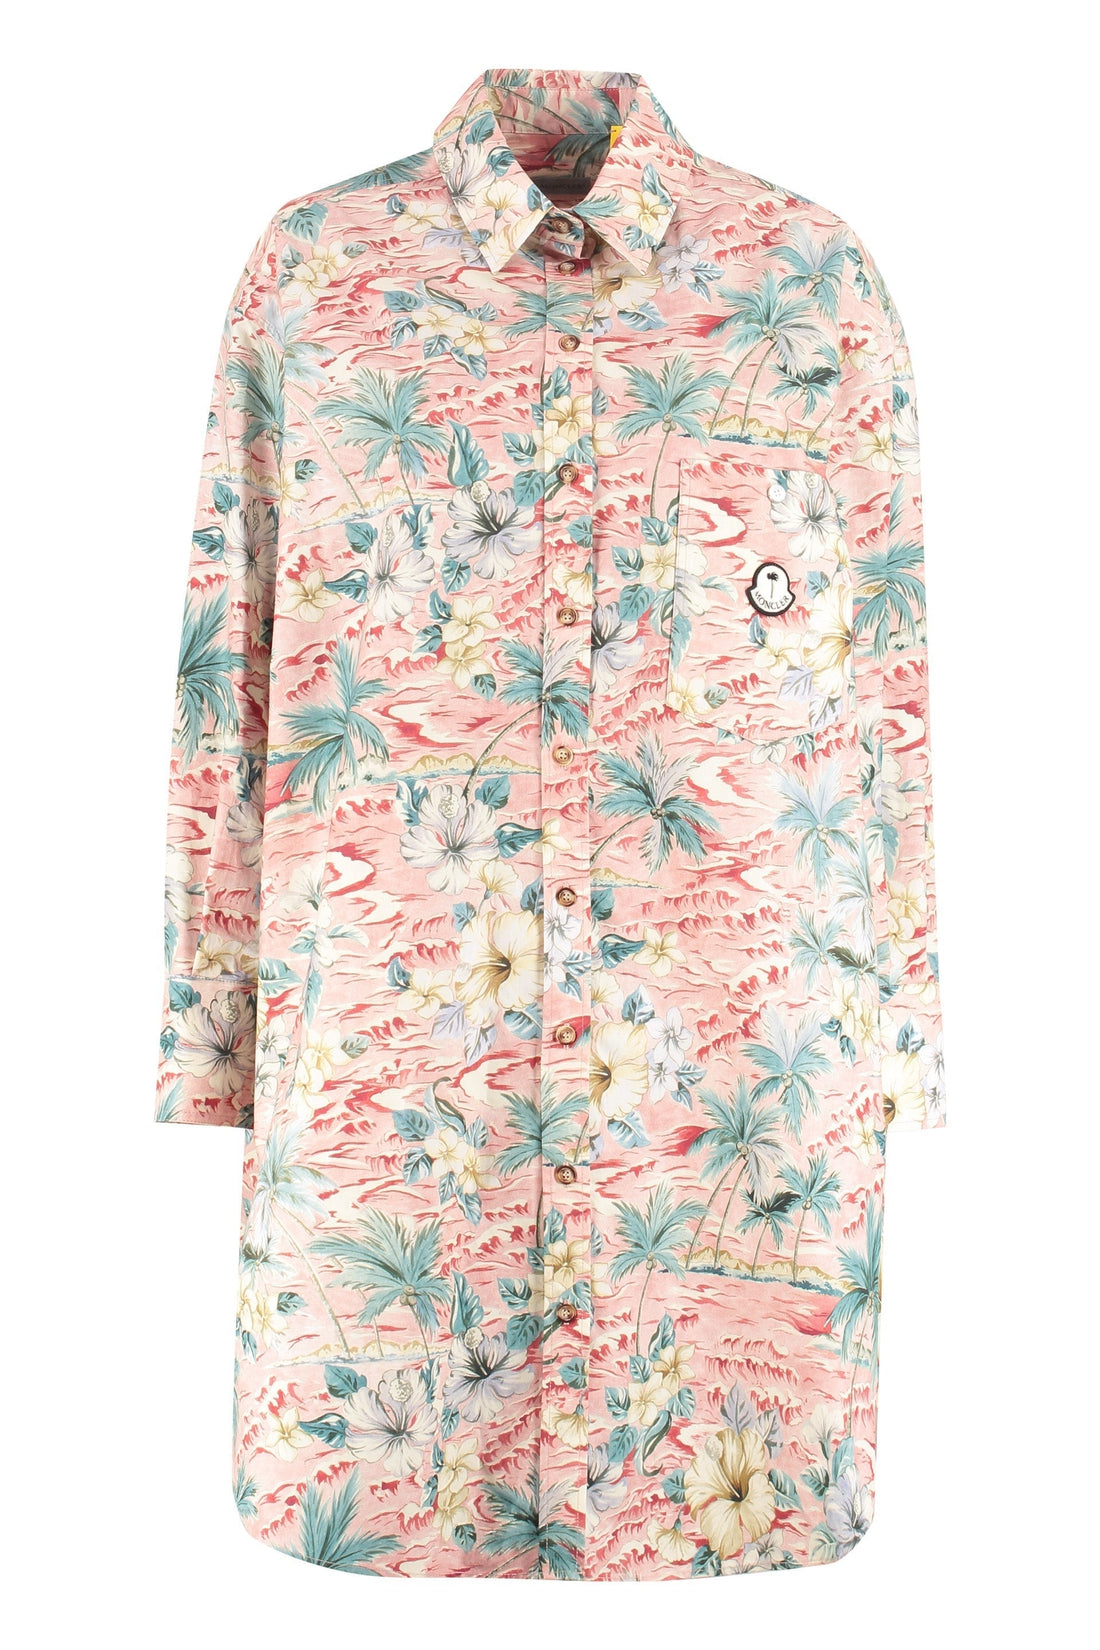 Moncler-OUTLET-SALE-8 Moncler Palm Angels - Printed cotton shirt-ARCHIVIST